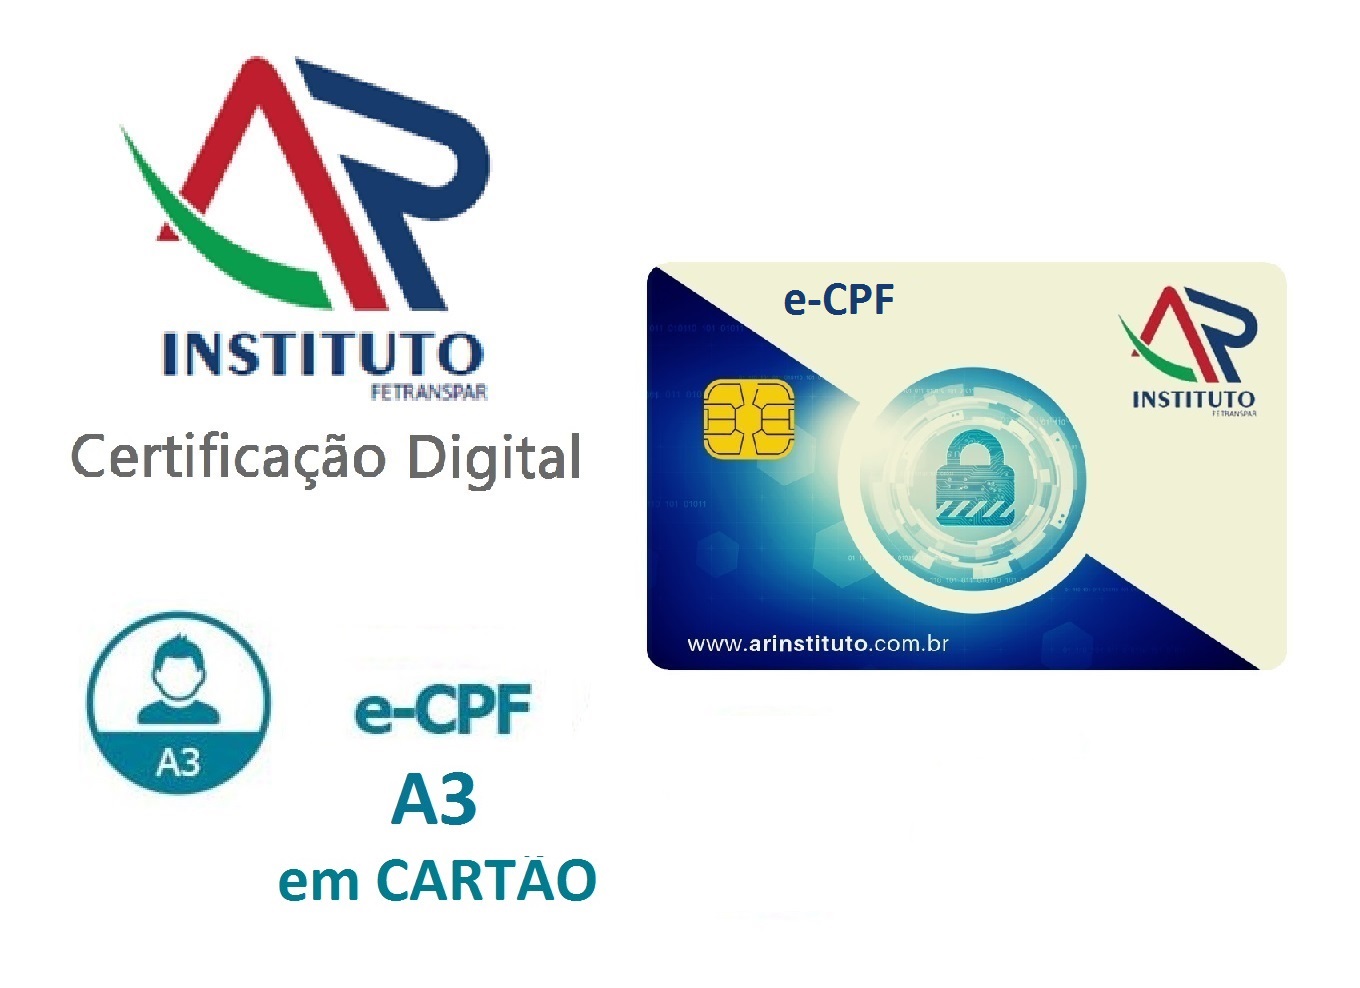 E-CPF A3 EM CARTÃO INTELIGENTE (VALIDADE DE 01 ANO)